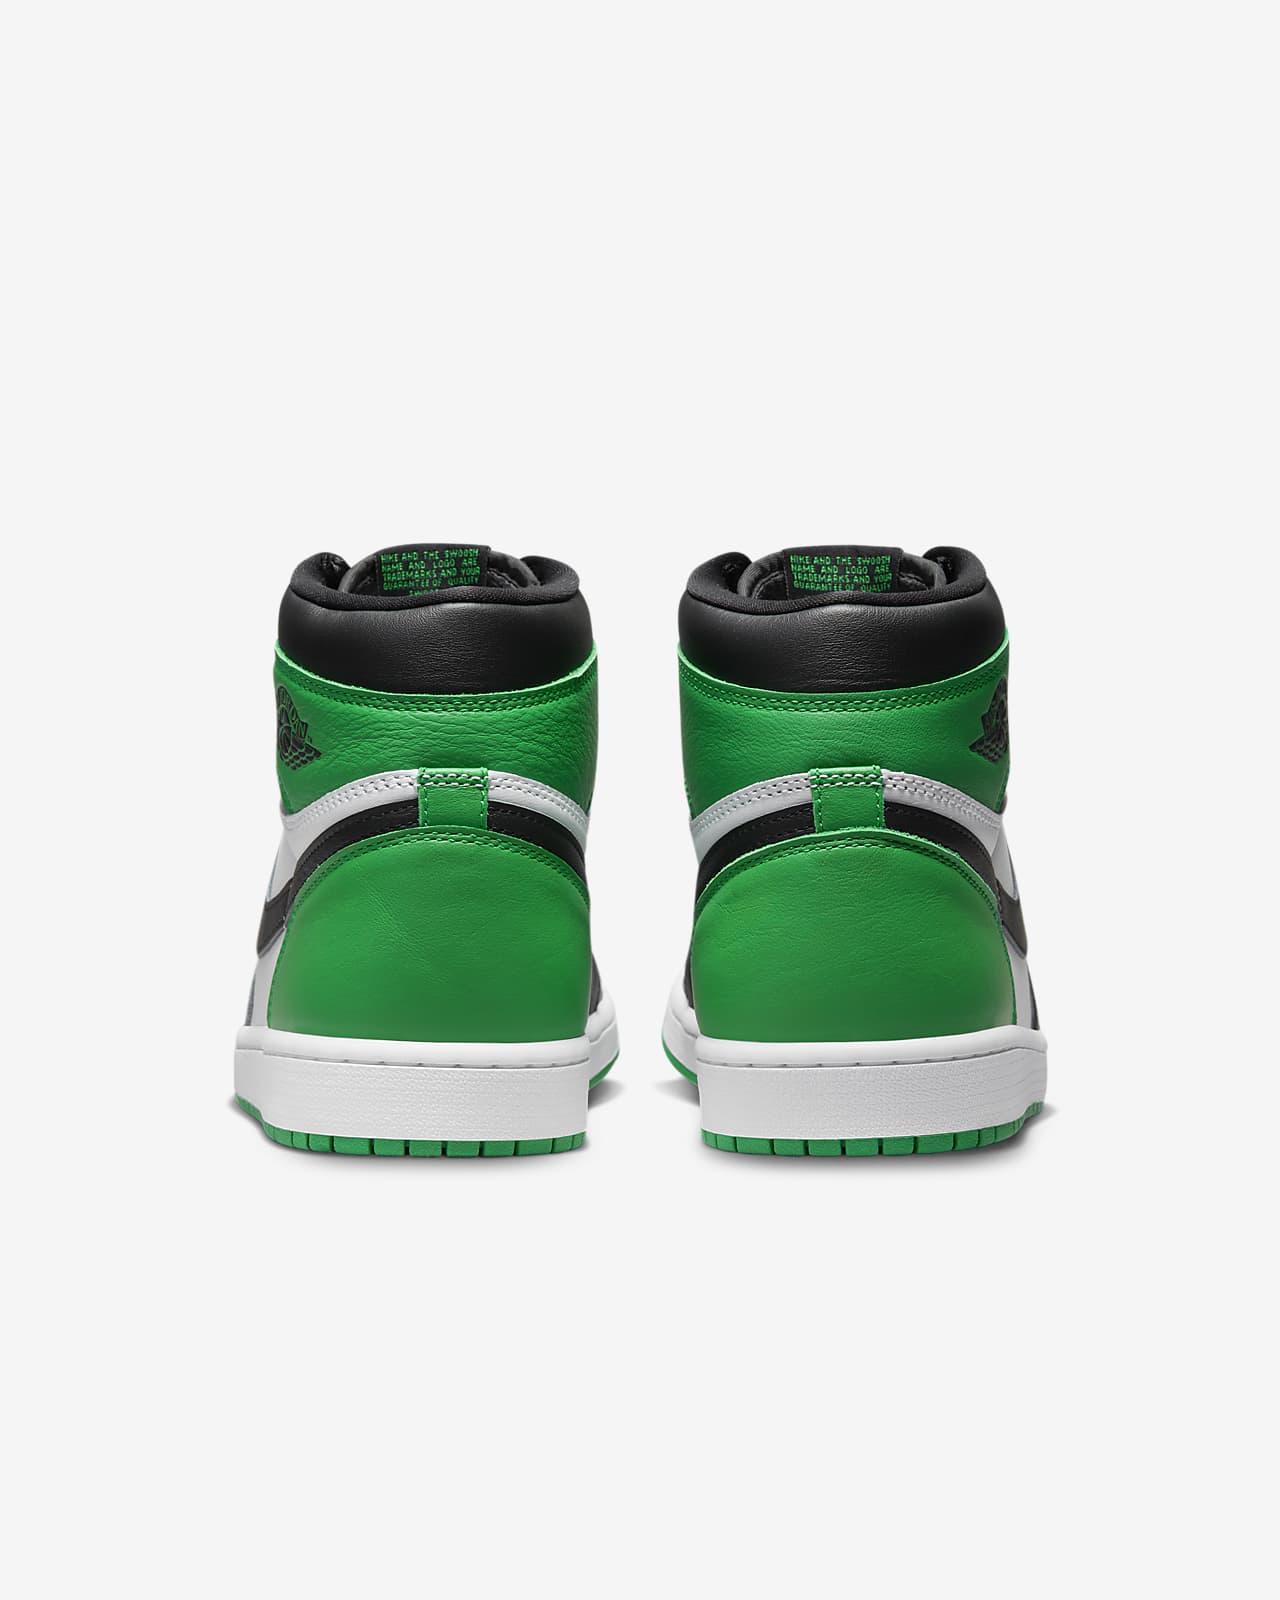 Restricciones Recomendado Tomar un riesgo Air Jordan 1 Retro High OG Men's Shoes. Nike.com